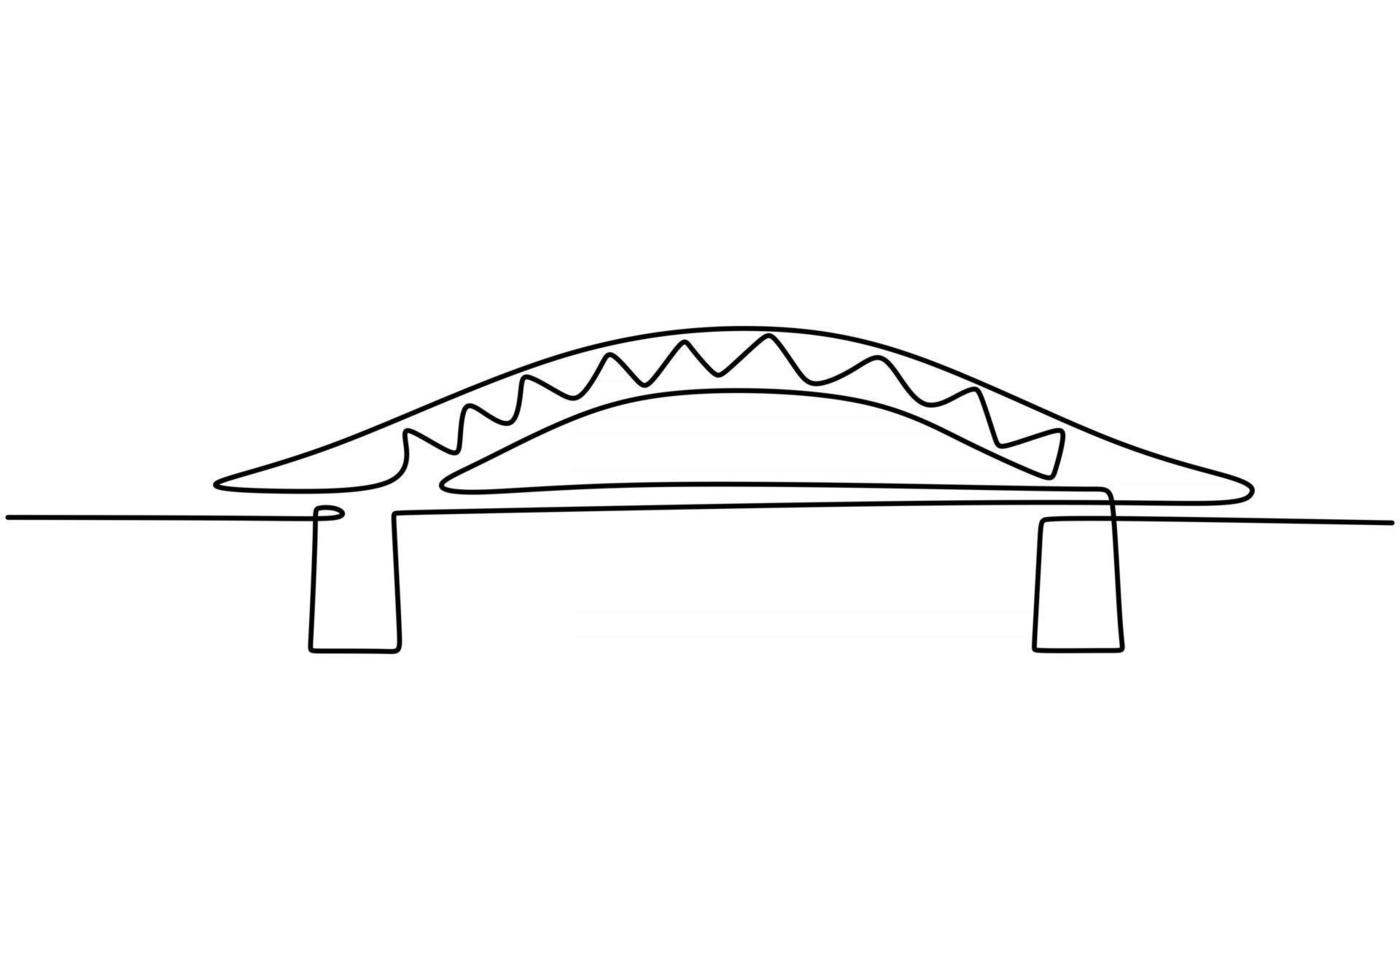 pont géant sur la rivière. une ligne continue de conception de dessin de pont. style minimaliste moderne simple isolé sur fond blanc. vecteur